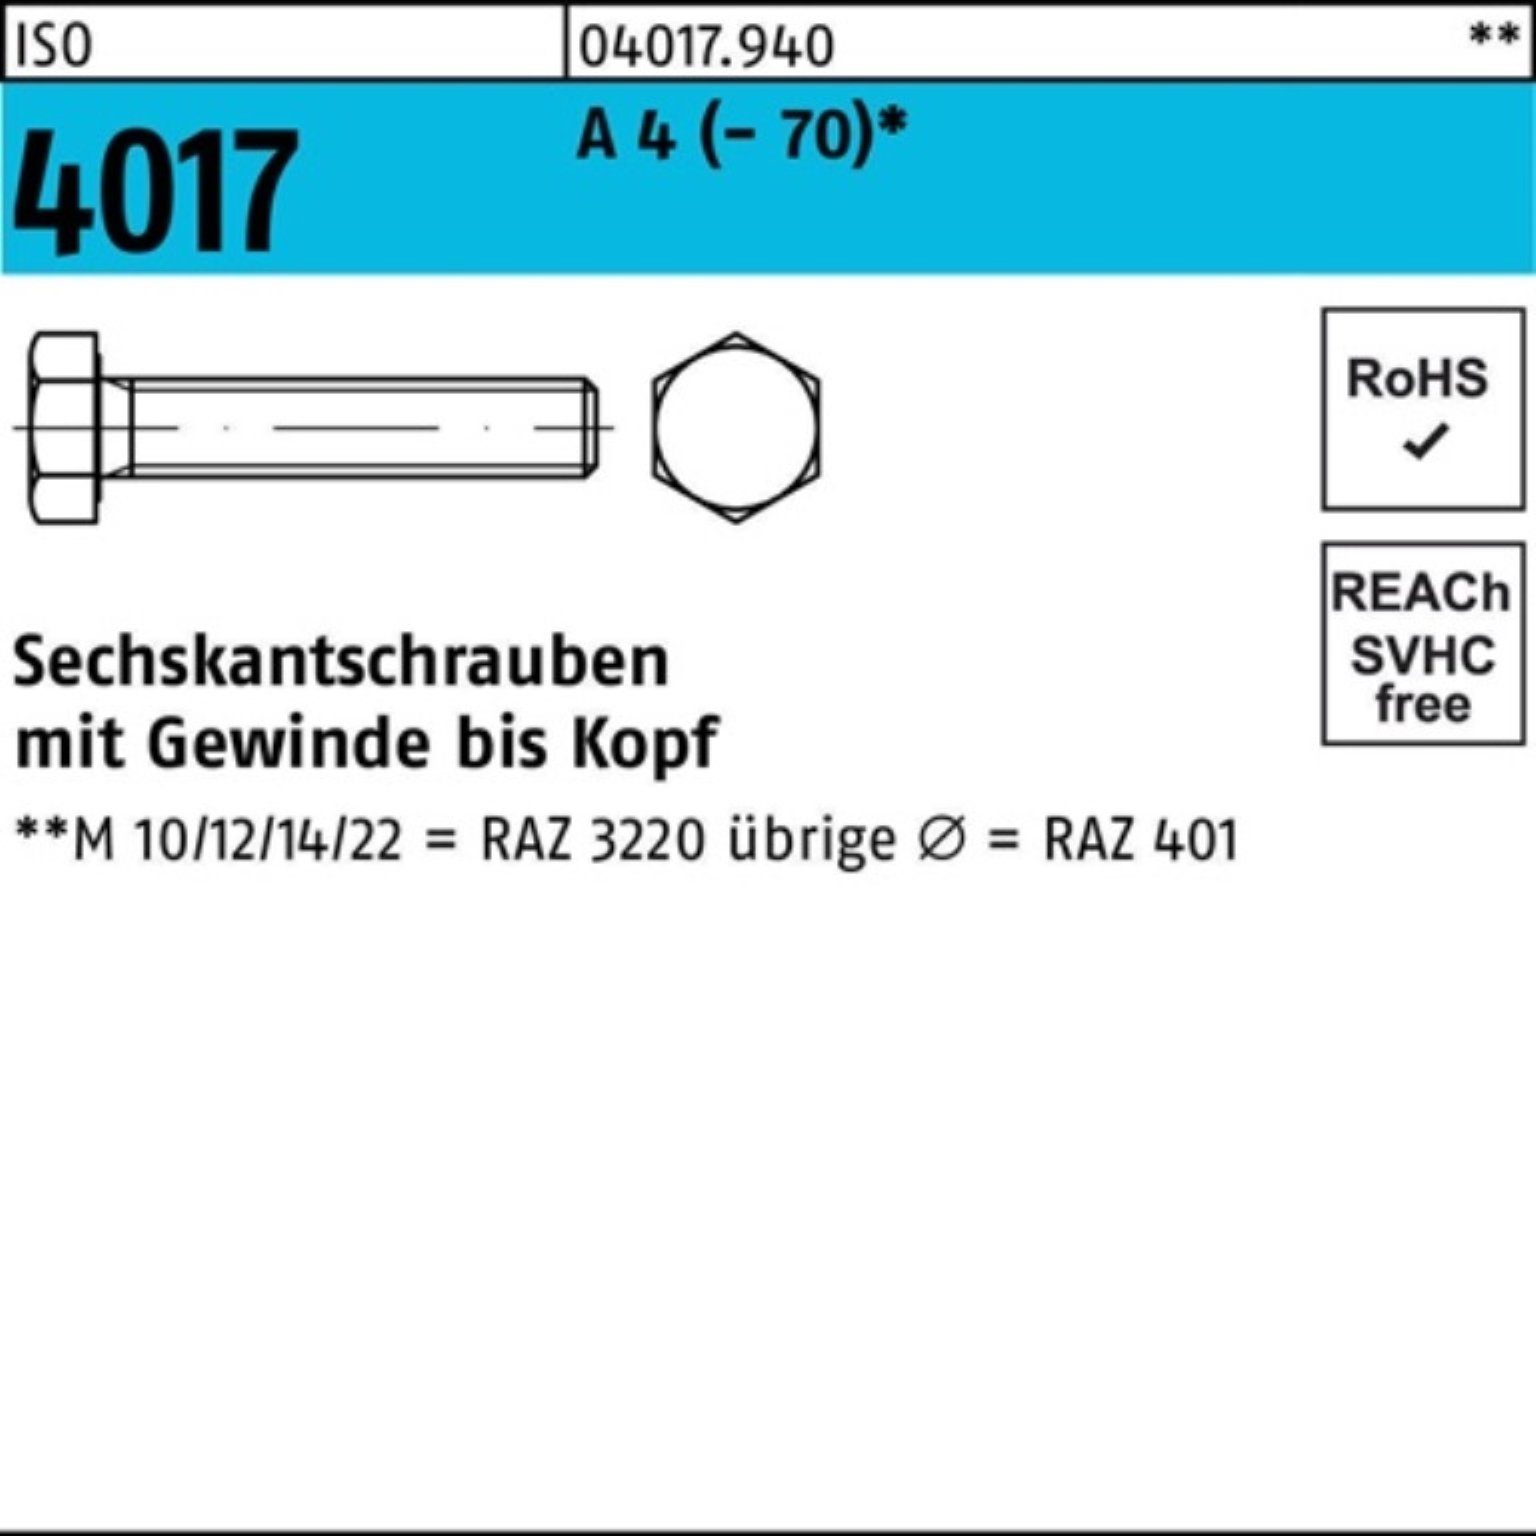 Bufab Sechskantschraube 100er Pack Sechskantschraube ISO 4017 VG M24x 90 A 4 (70) 1 Stück I